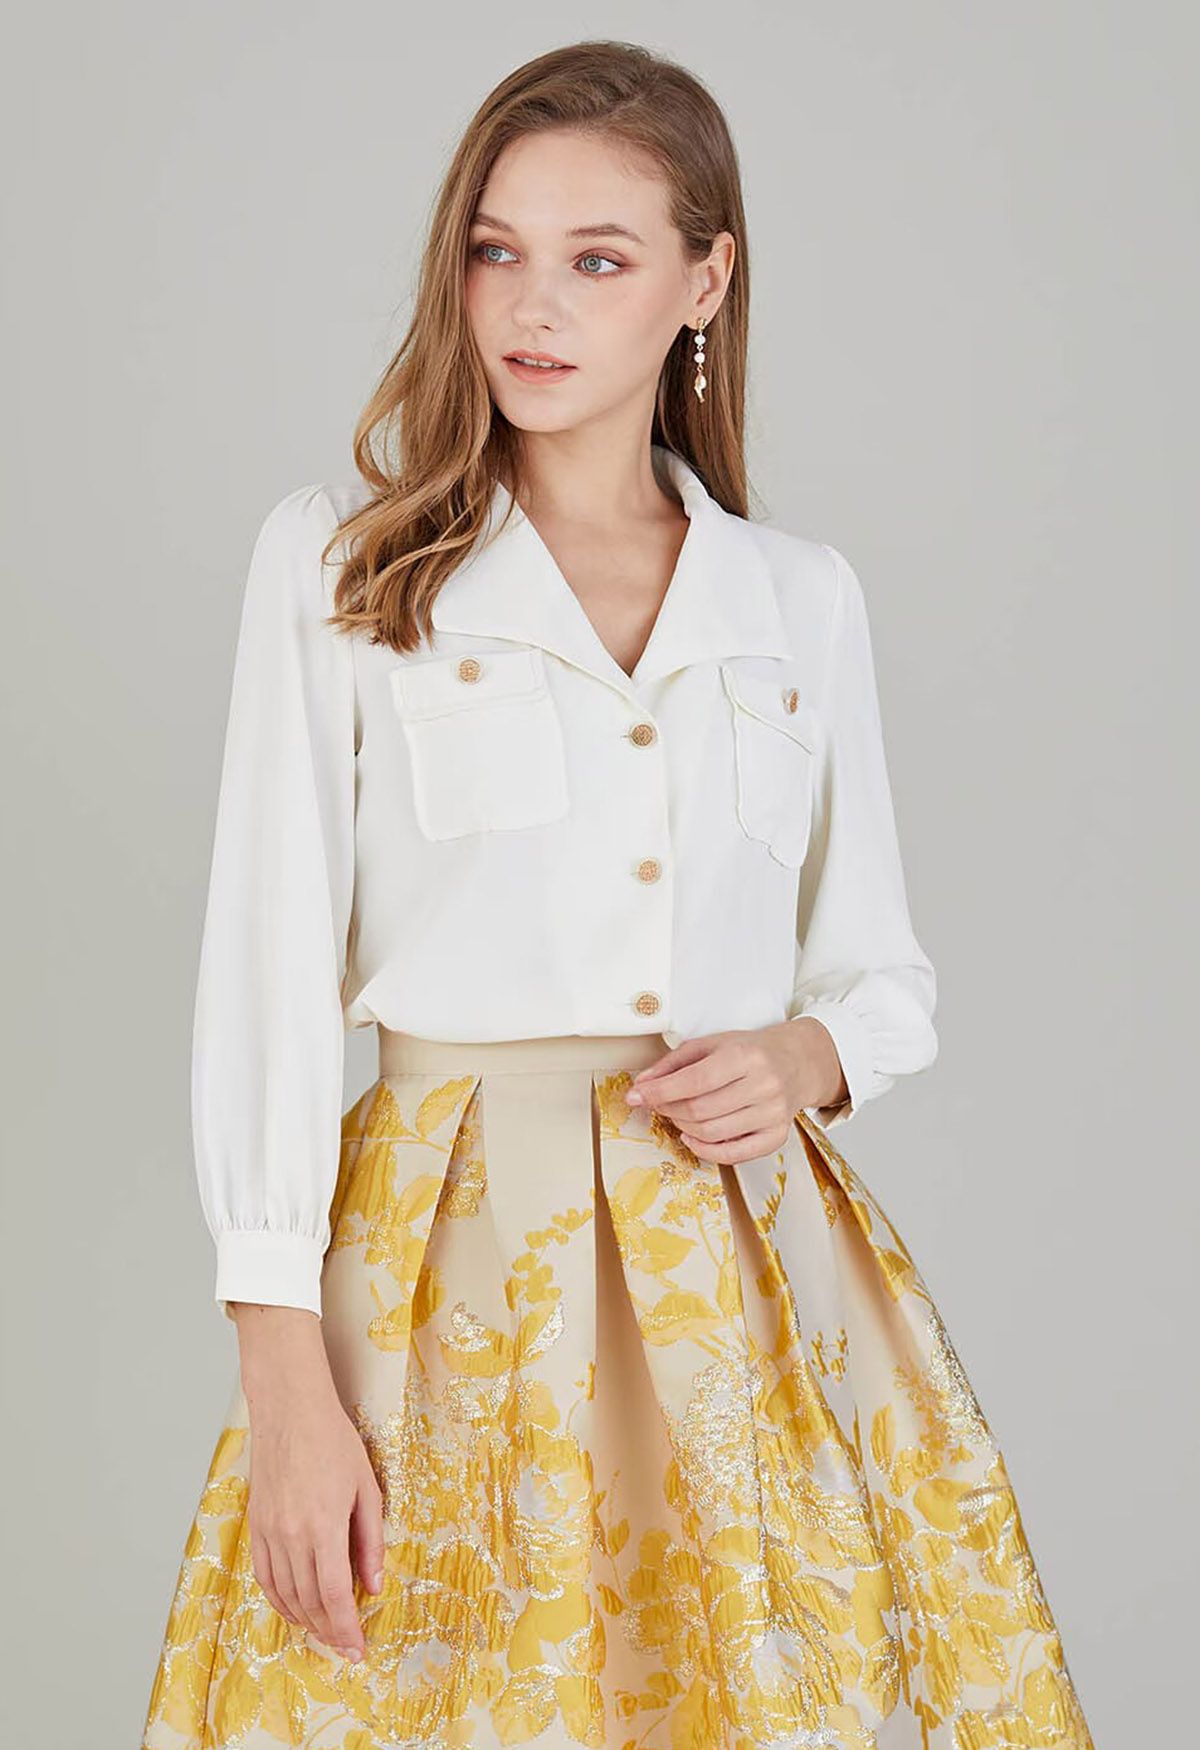 Pointed Collar Golden Button Shirt in Cream